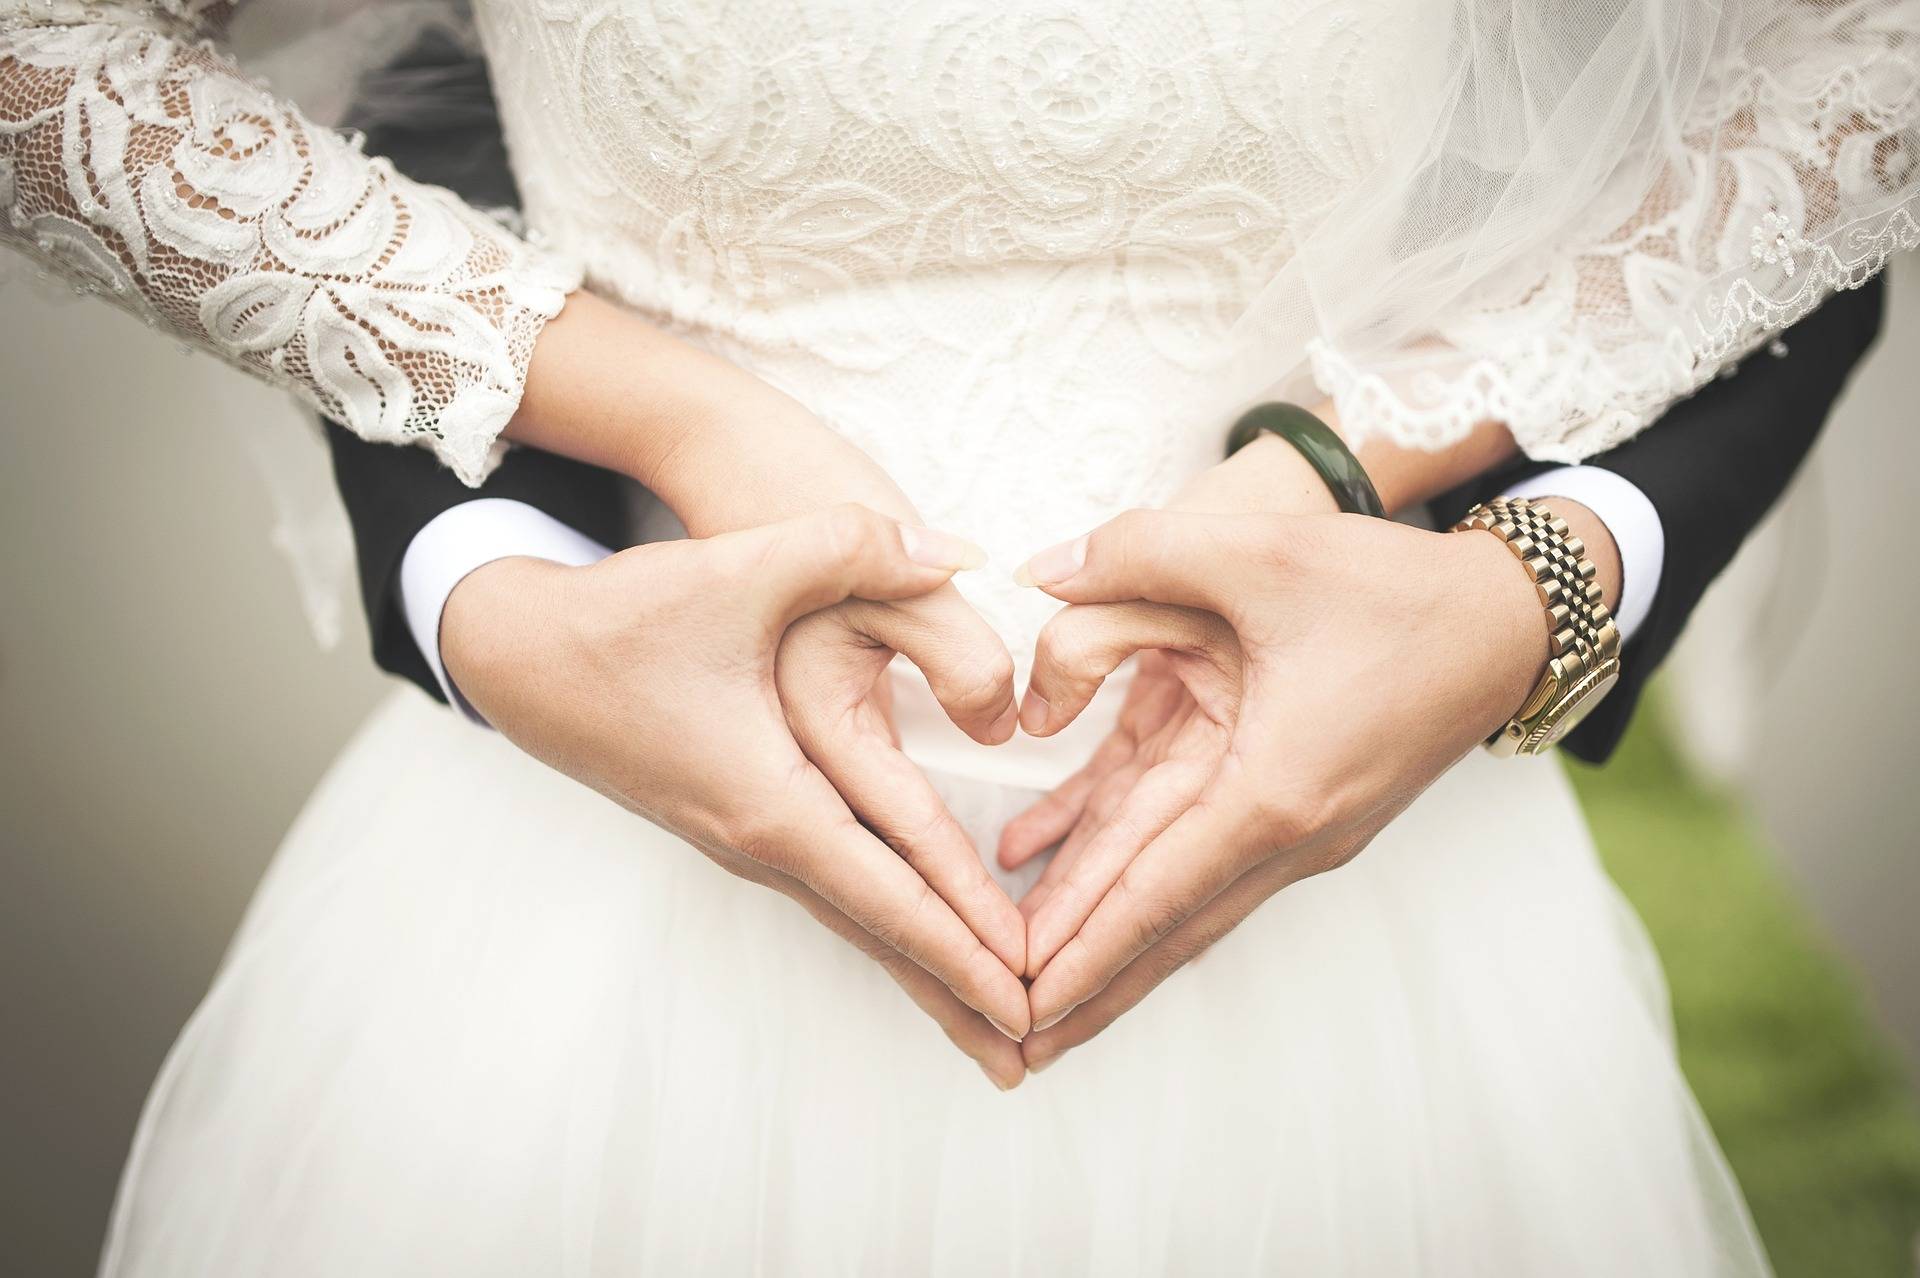 Detailaufnahme von einem Brautpaar, das seine Hände zu einem Herz formt